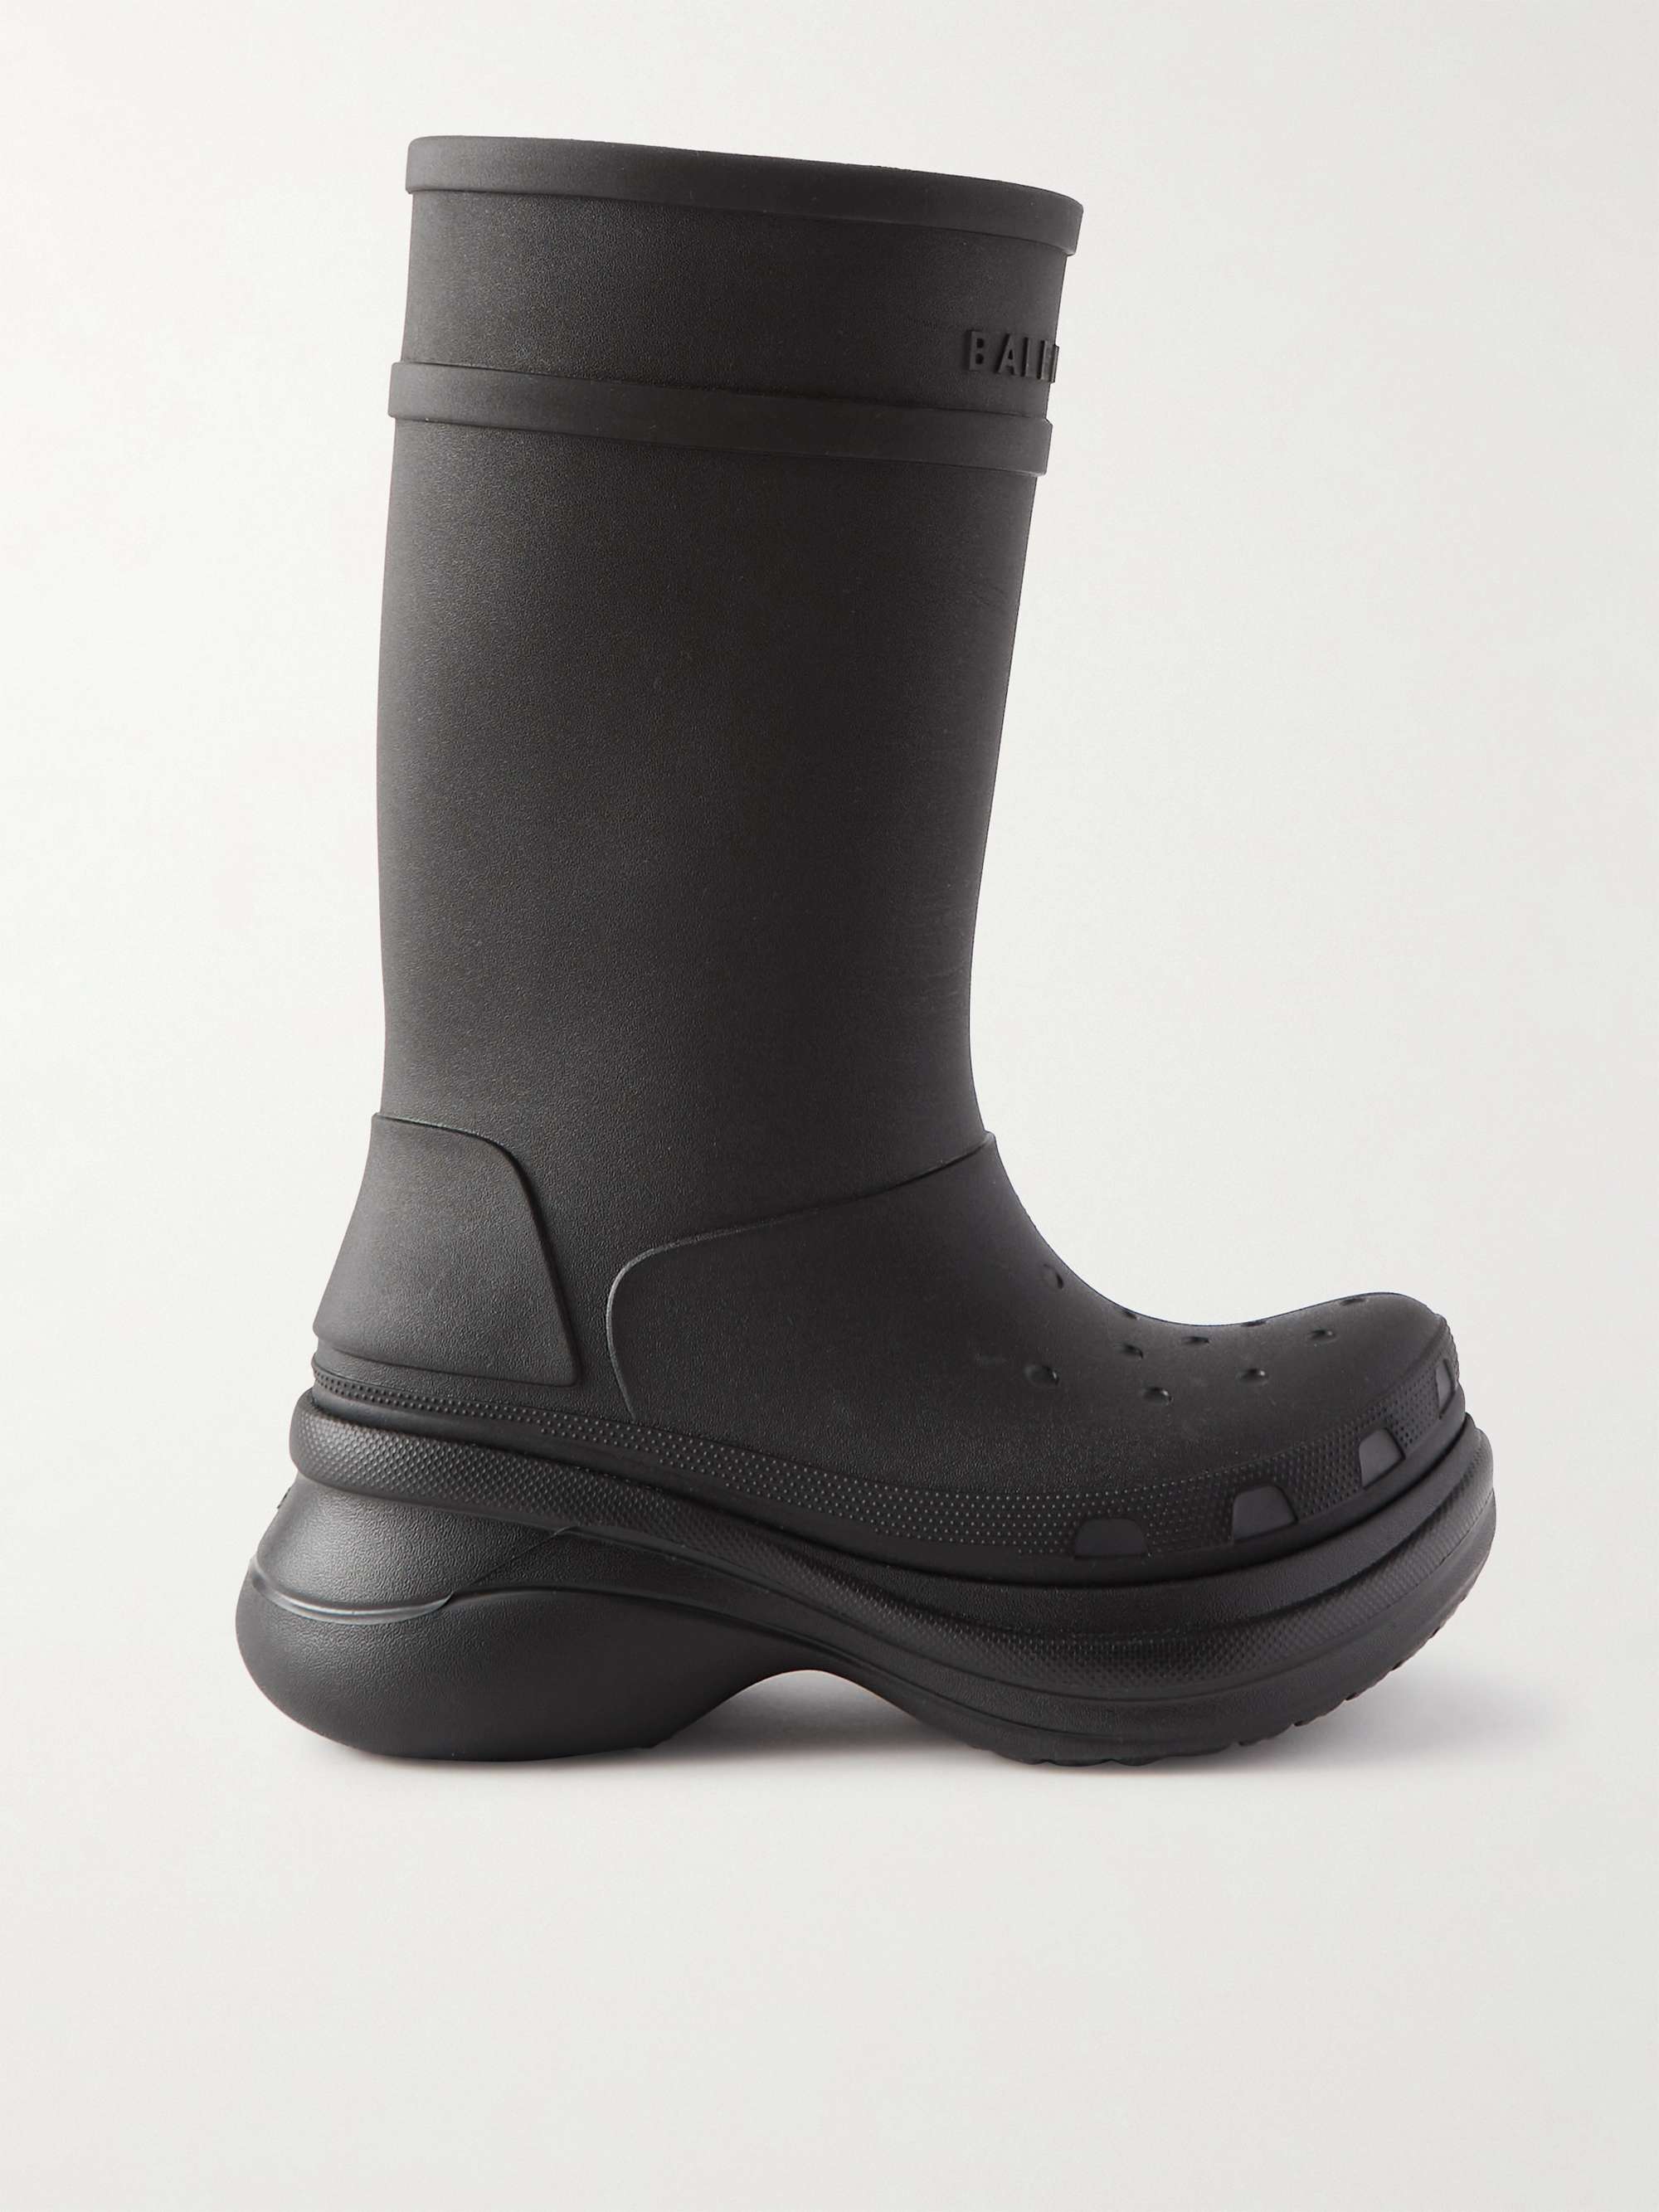 BALENCIAGA + Crocs Rubber Boots for Men | MR PORTER